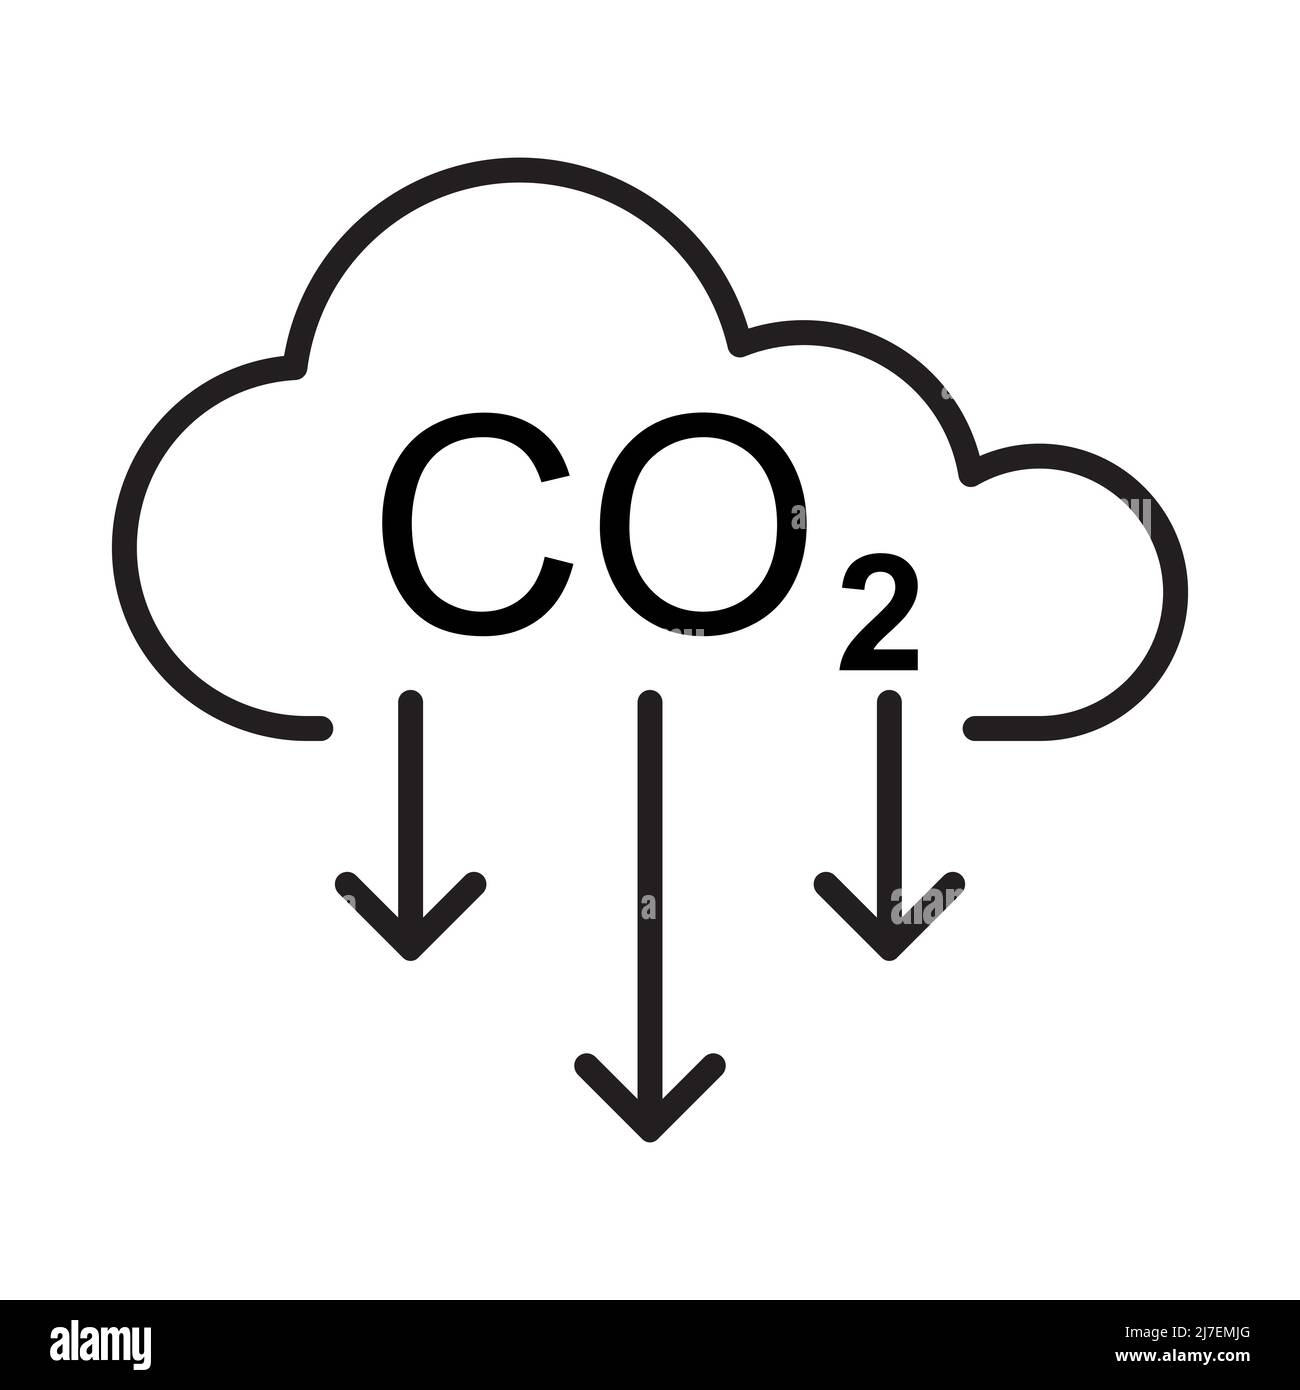 Symbolvektor zur Reduzierung von CO2-Emissionen für Grafikdesign, Logo, Website, soziale Medien, mobile App, UI-Abbildung Stock Vektor